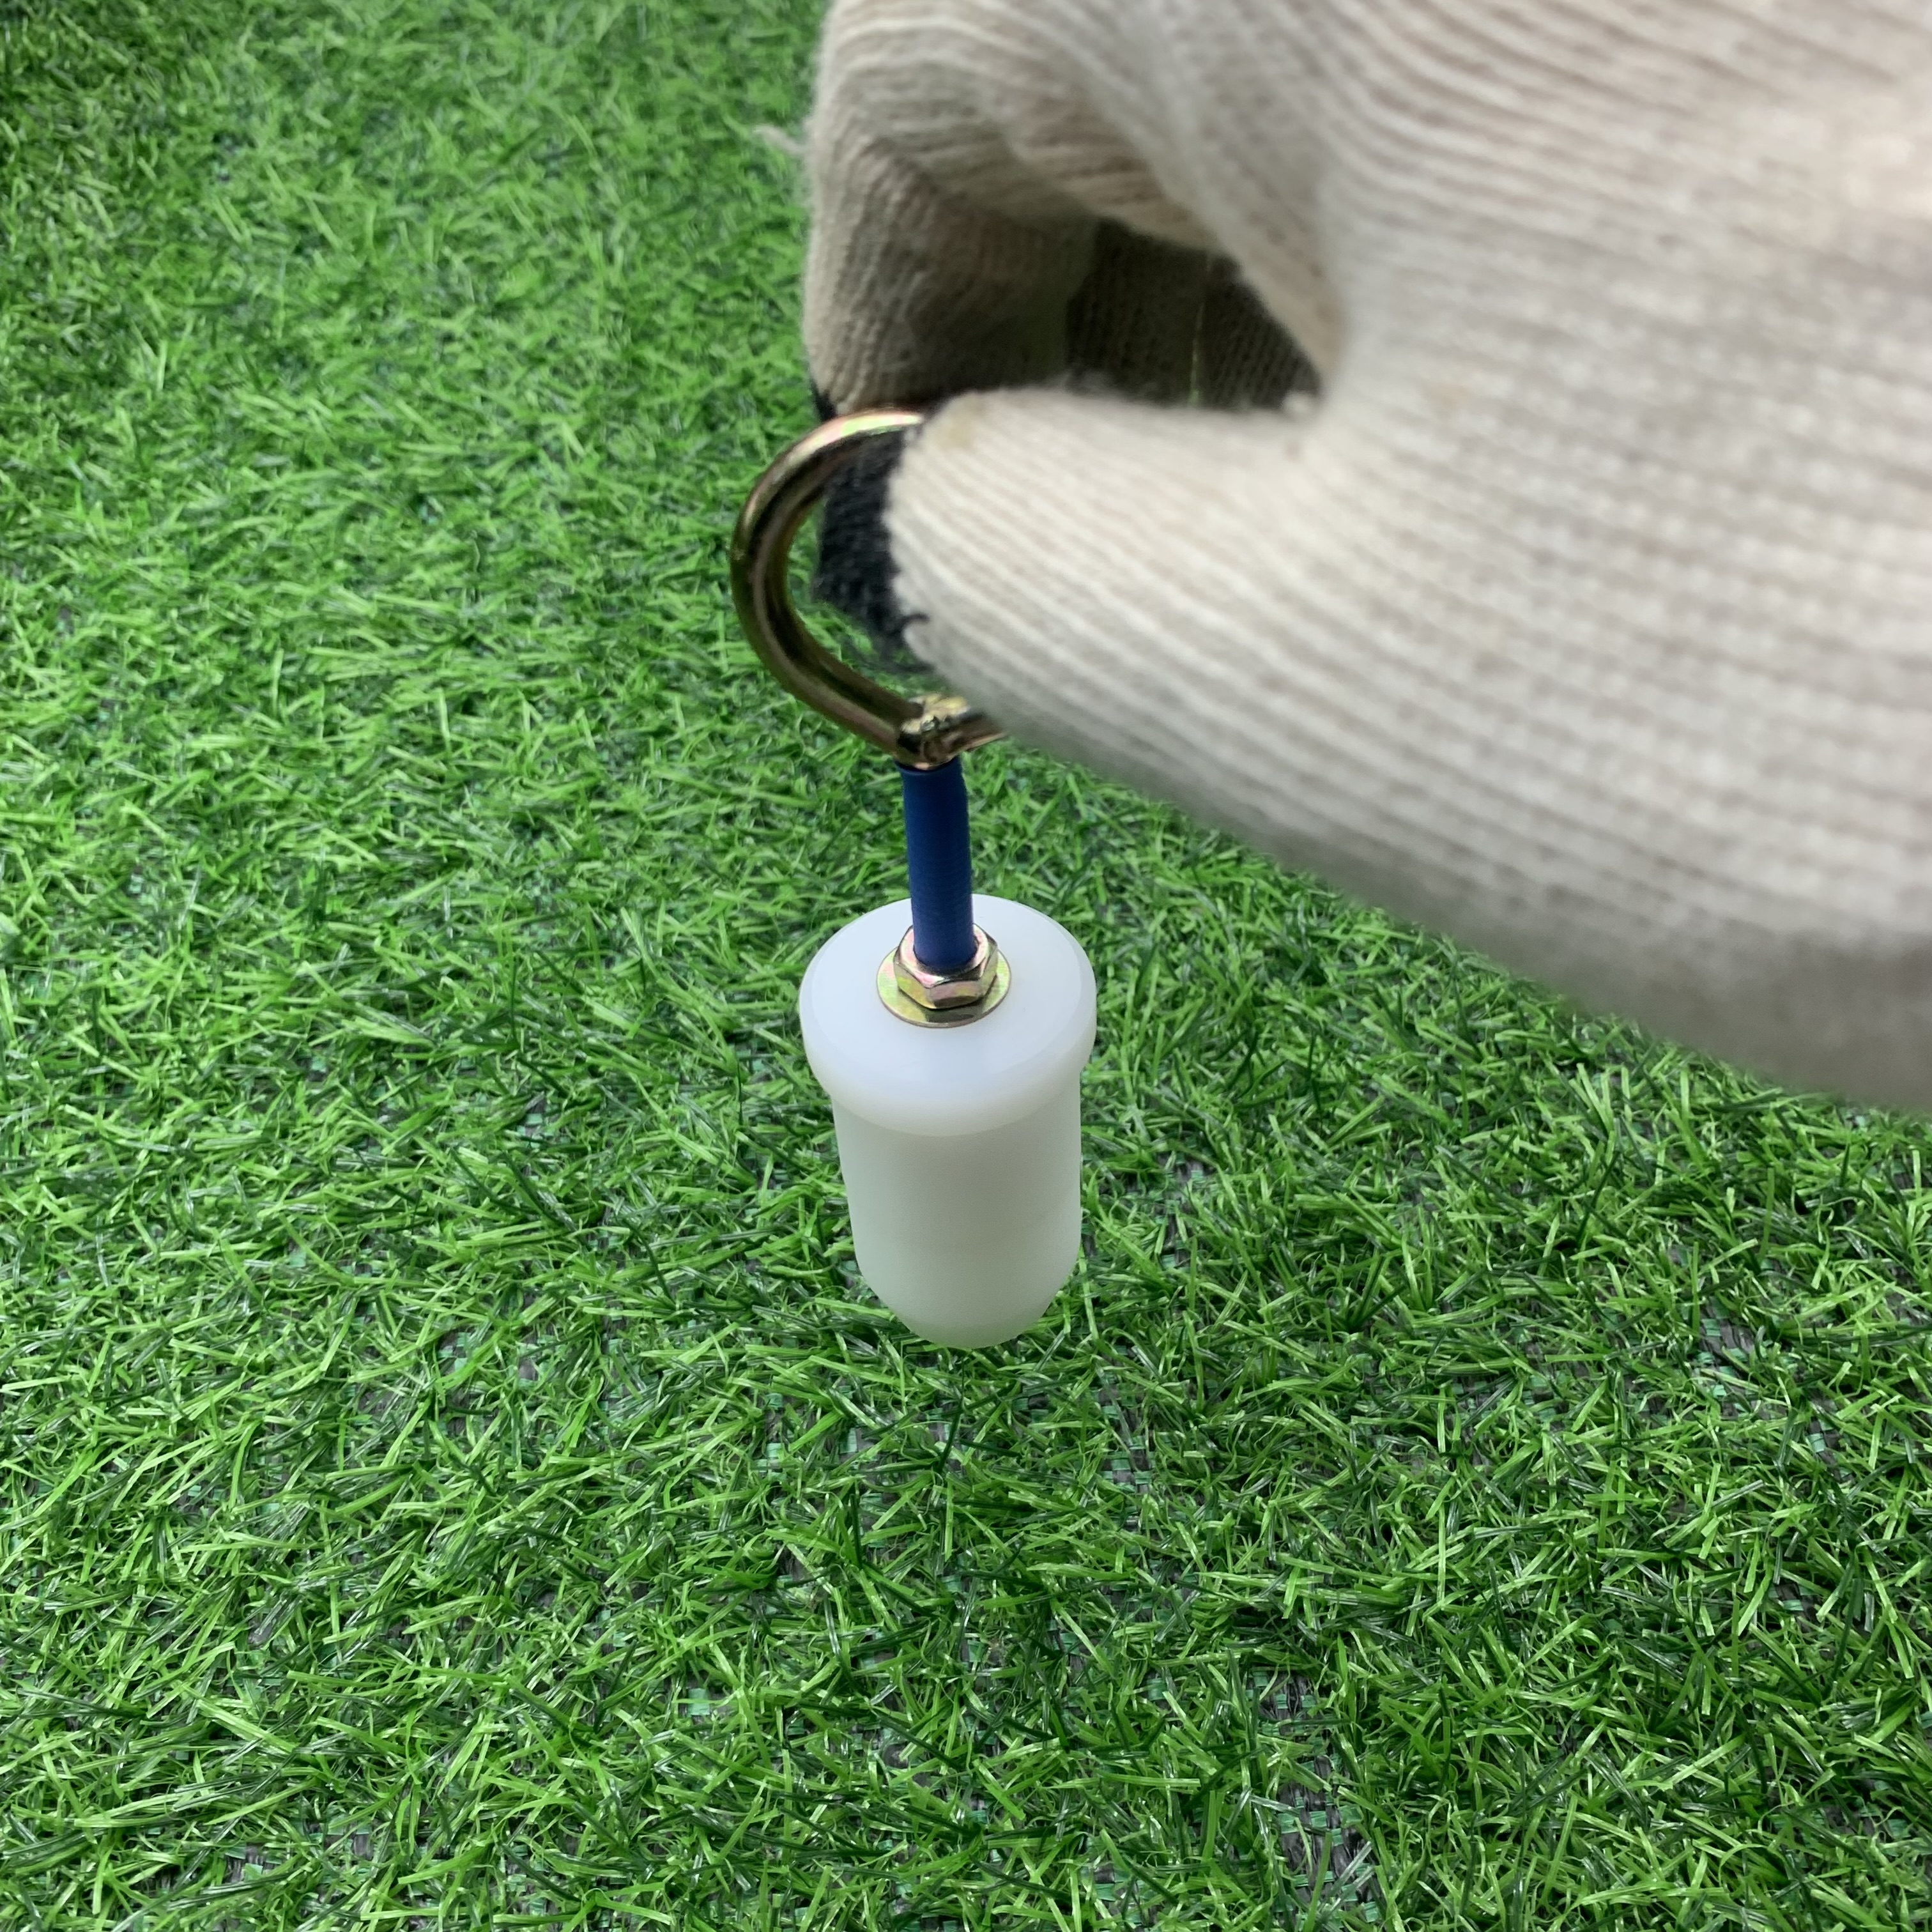 Trên tay một chiếc khuôn nong ống loại nhựa trơn để nối ống nước μPVC Ø27